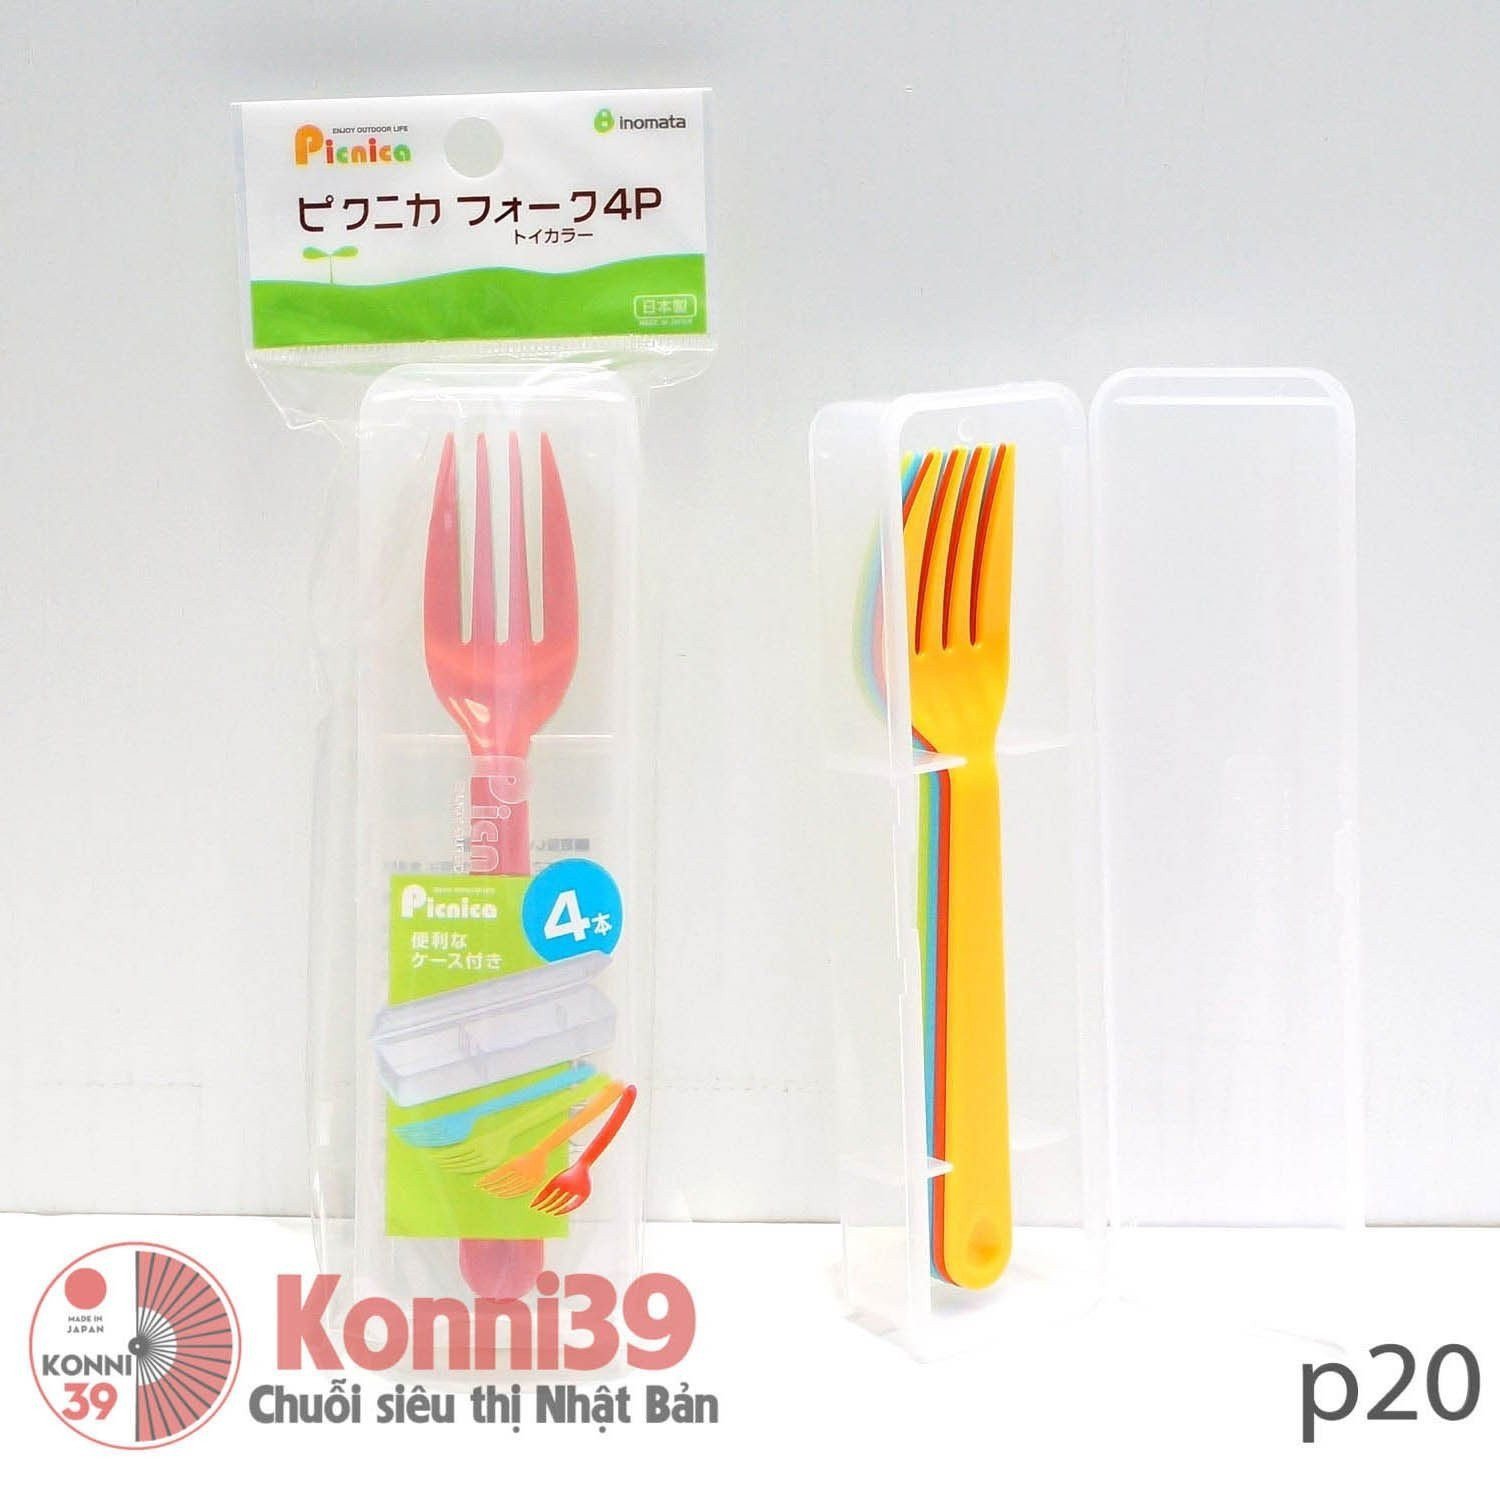 Dĩa nhựa set4 INOMATA-Chuỗi siêu thị Nhật Bản - MADE IN JAPAN Konni39 tại Việt Nam